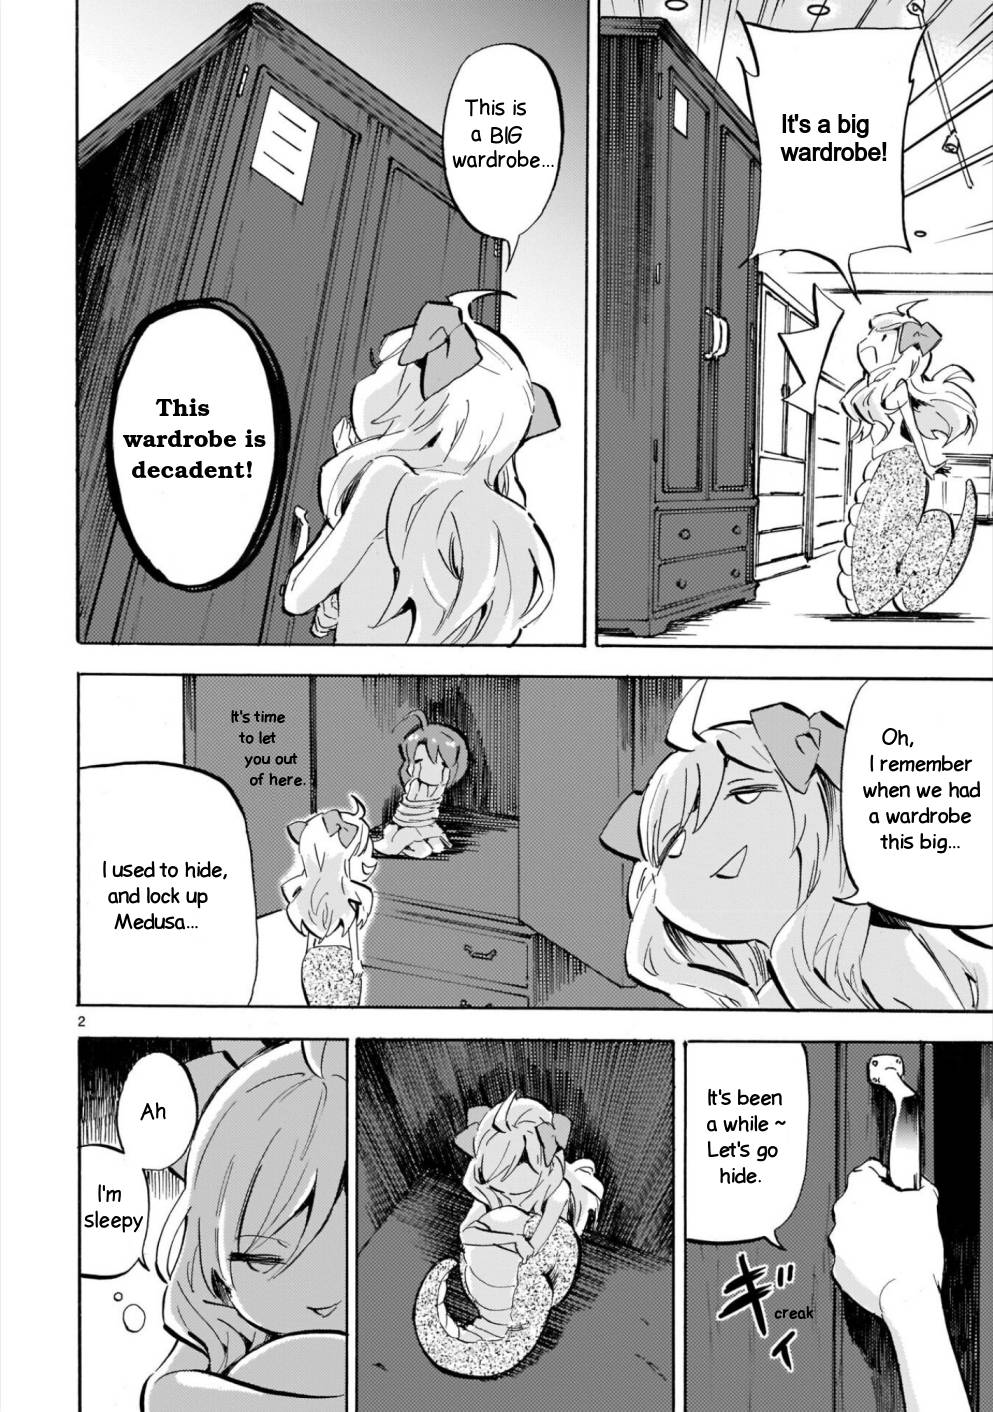 Jashin-chan Dropkick chapter 181 page 2